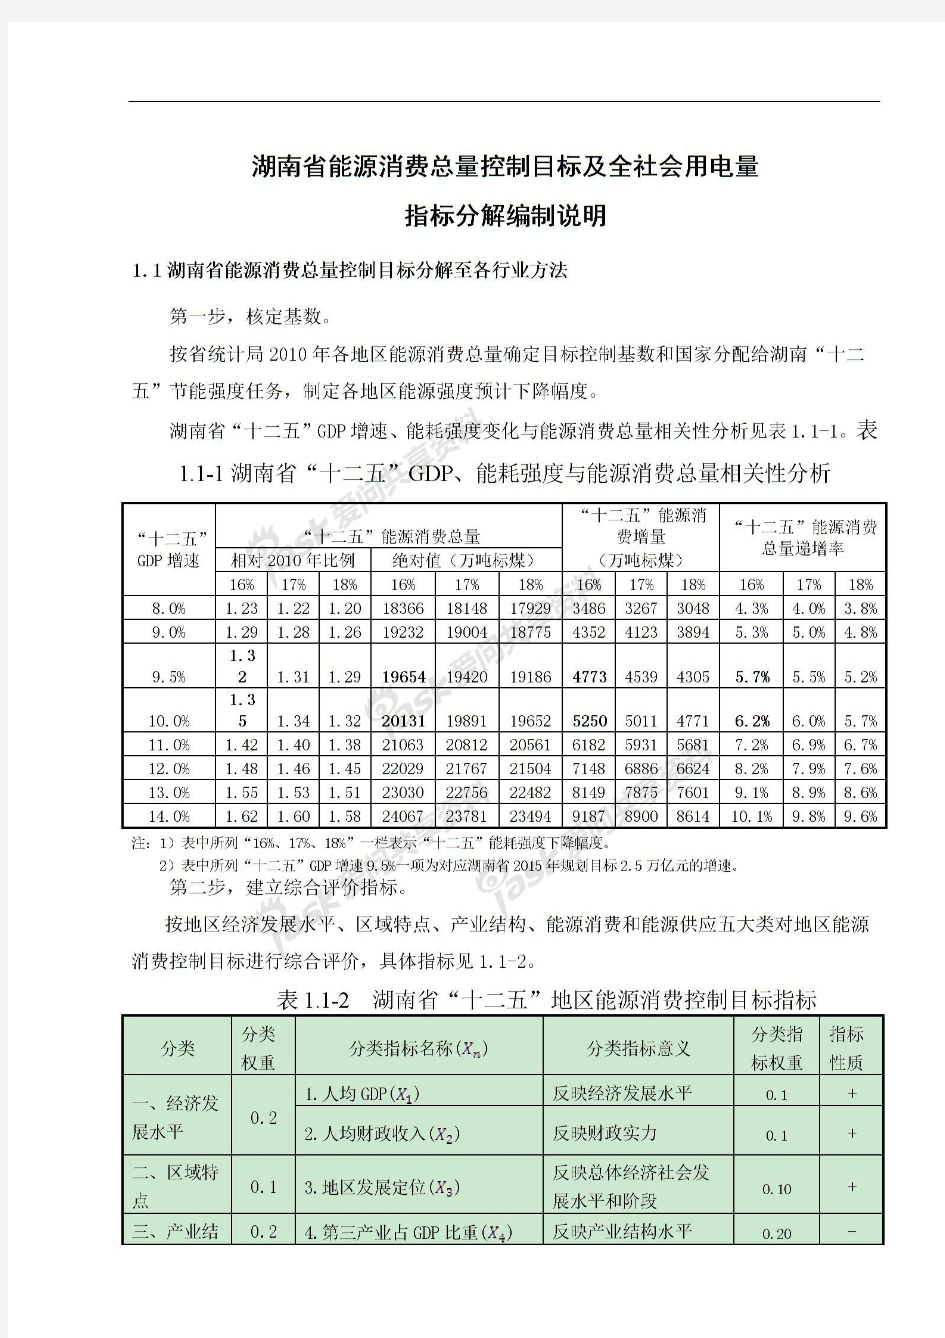 湖南省能源消费总量控制目标及全社会用电量指标分解编制说明